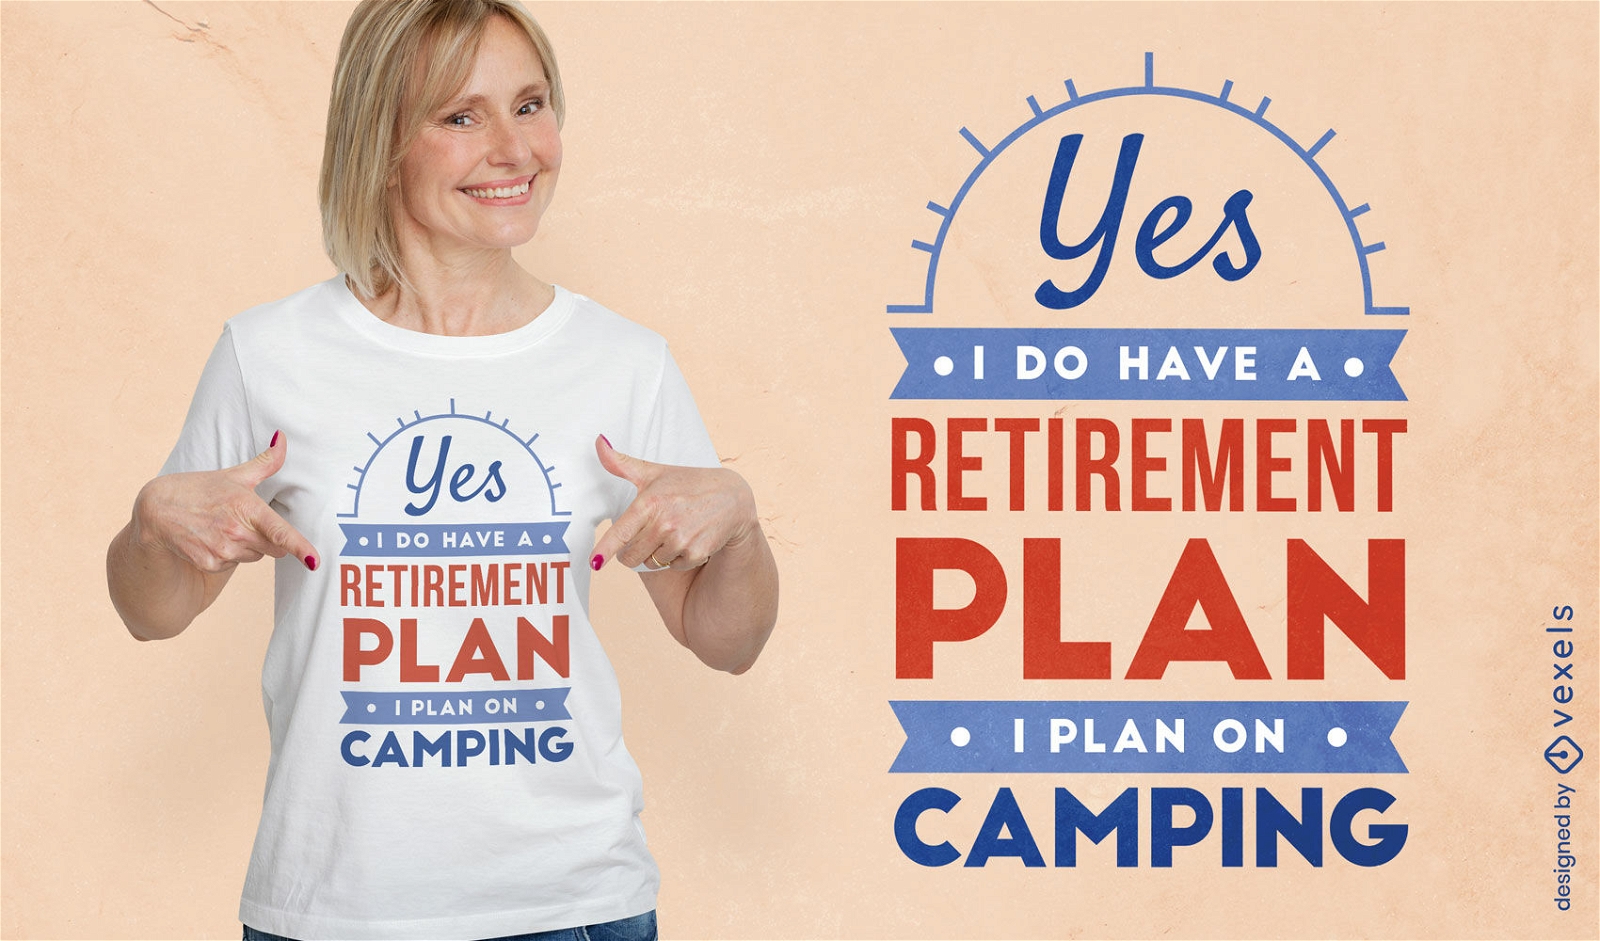 Dise?o de camiseta de jubilaci?n y camping.